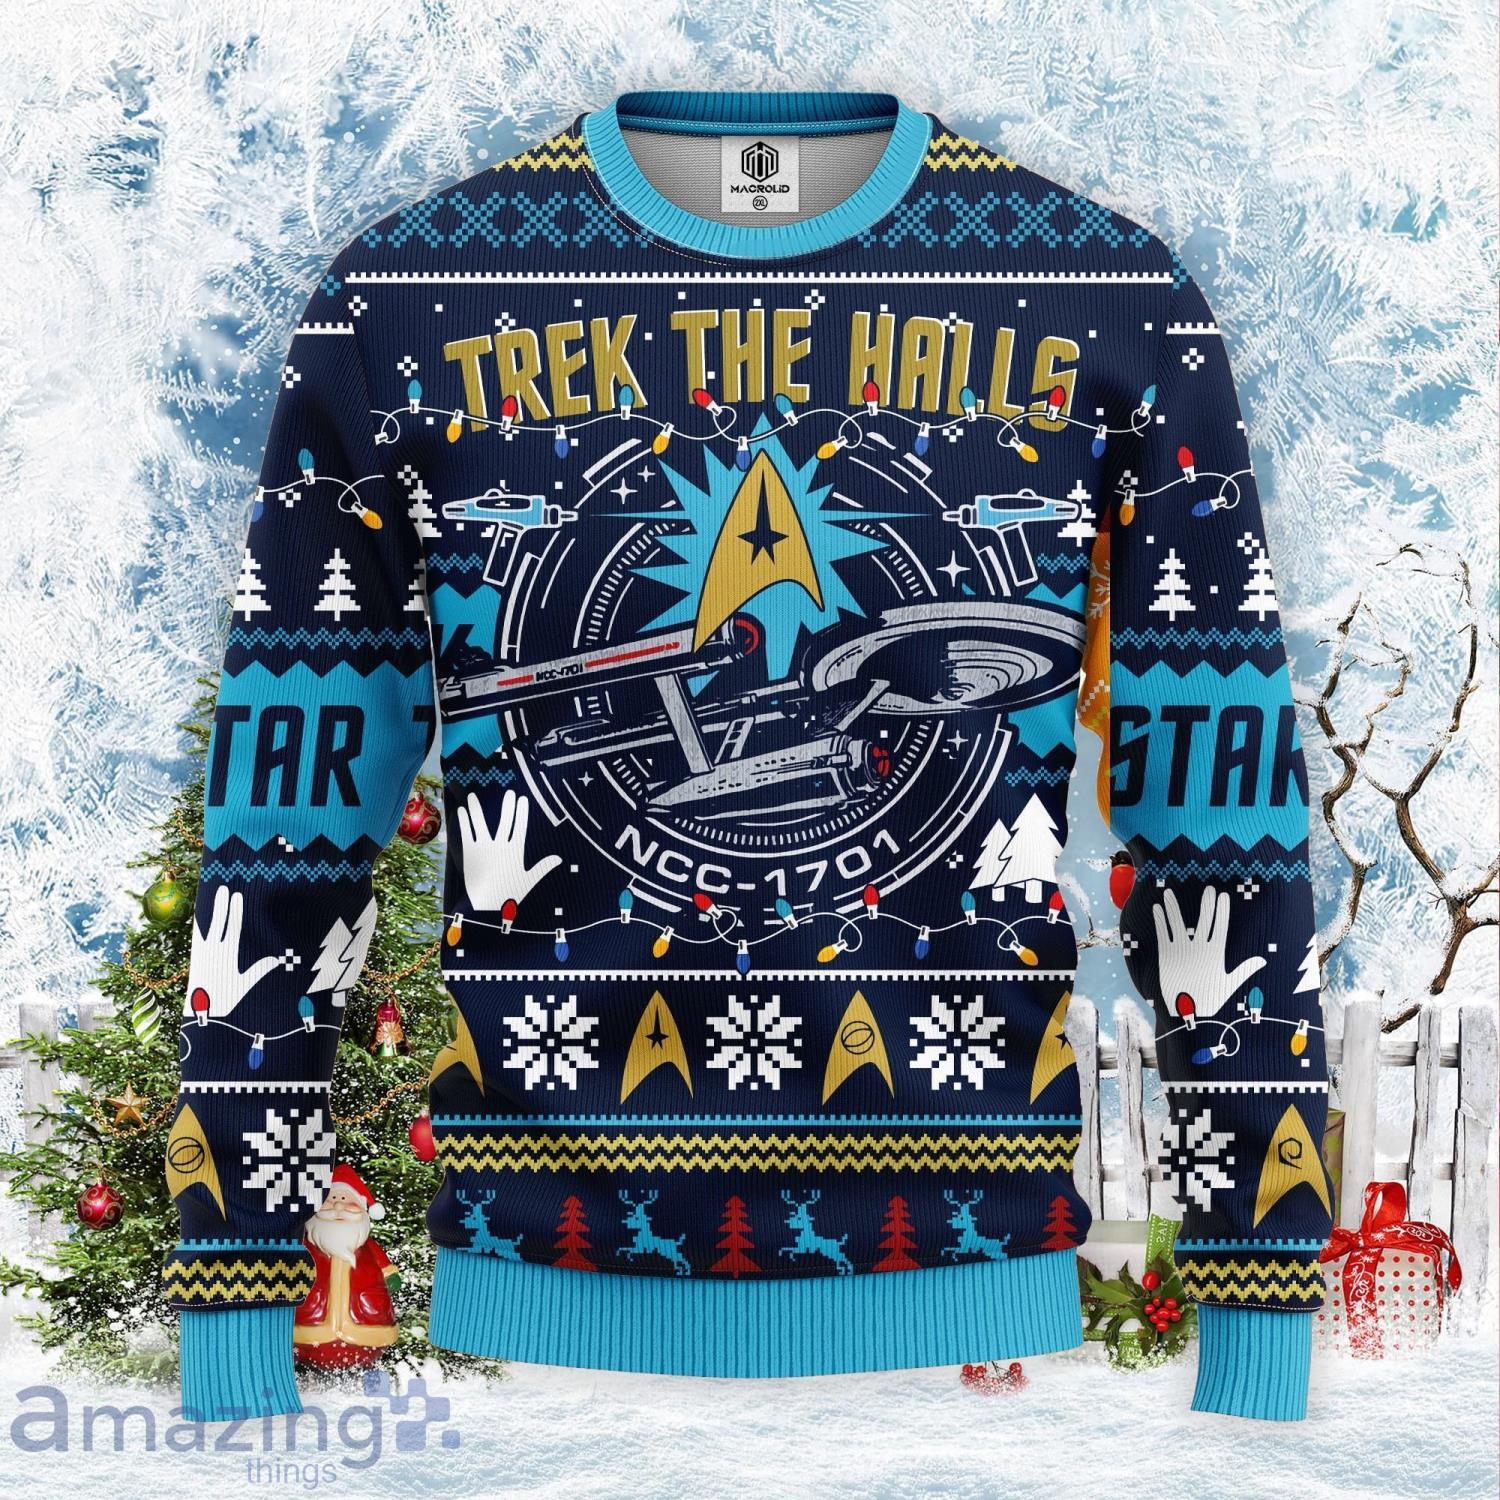 Star Trek Sweater Inspiring Star Trek Gifts For Men - Personalized